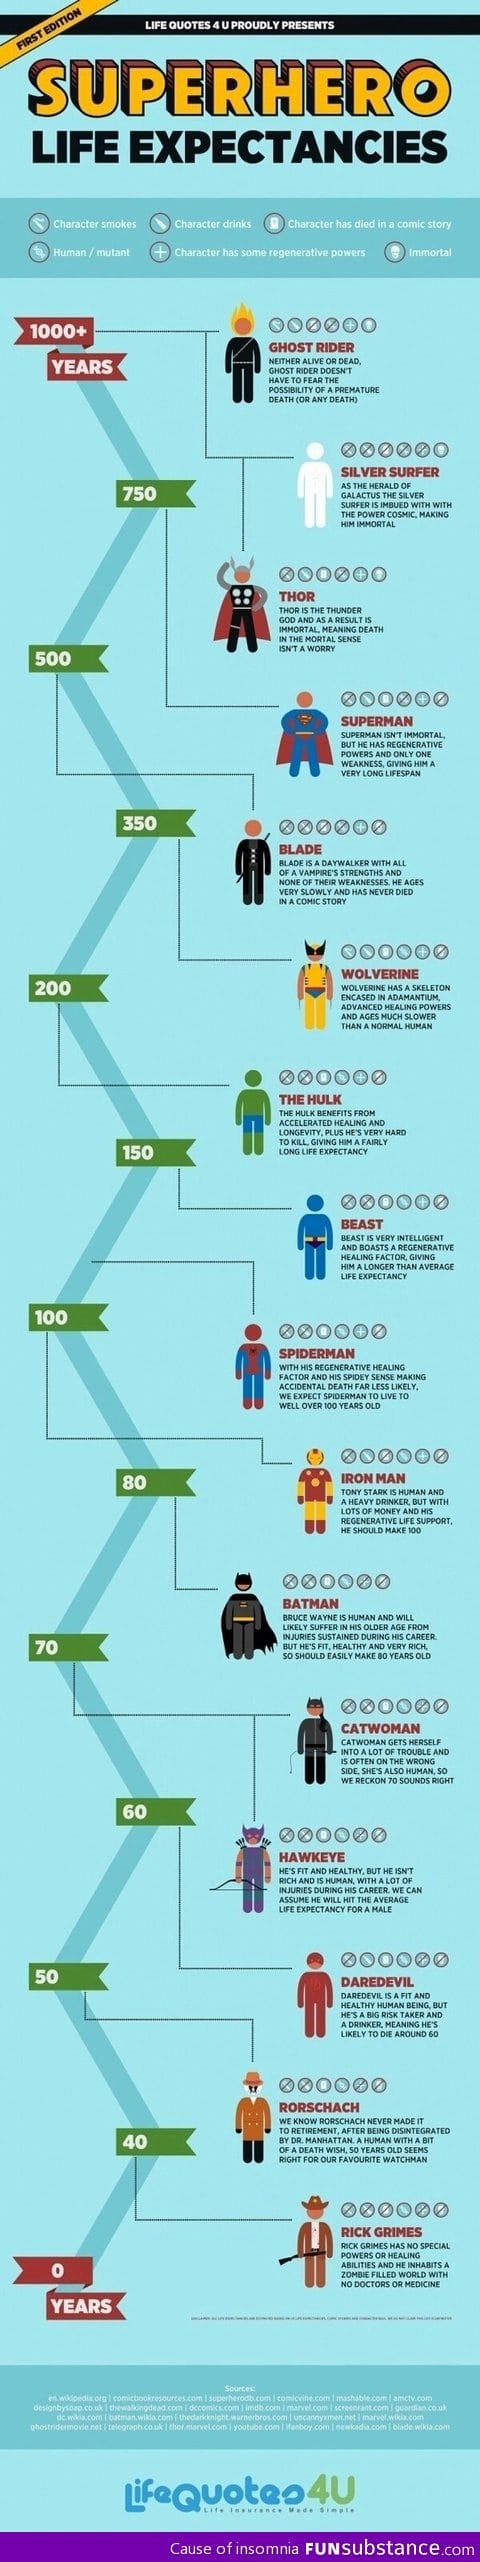 Superhero life expectancies